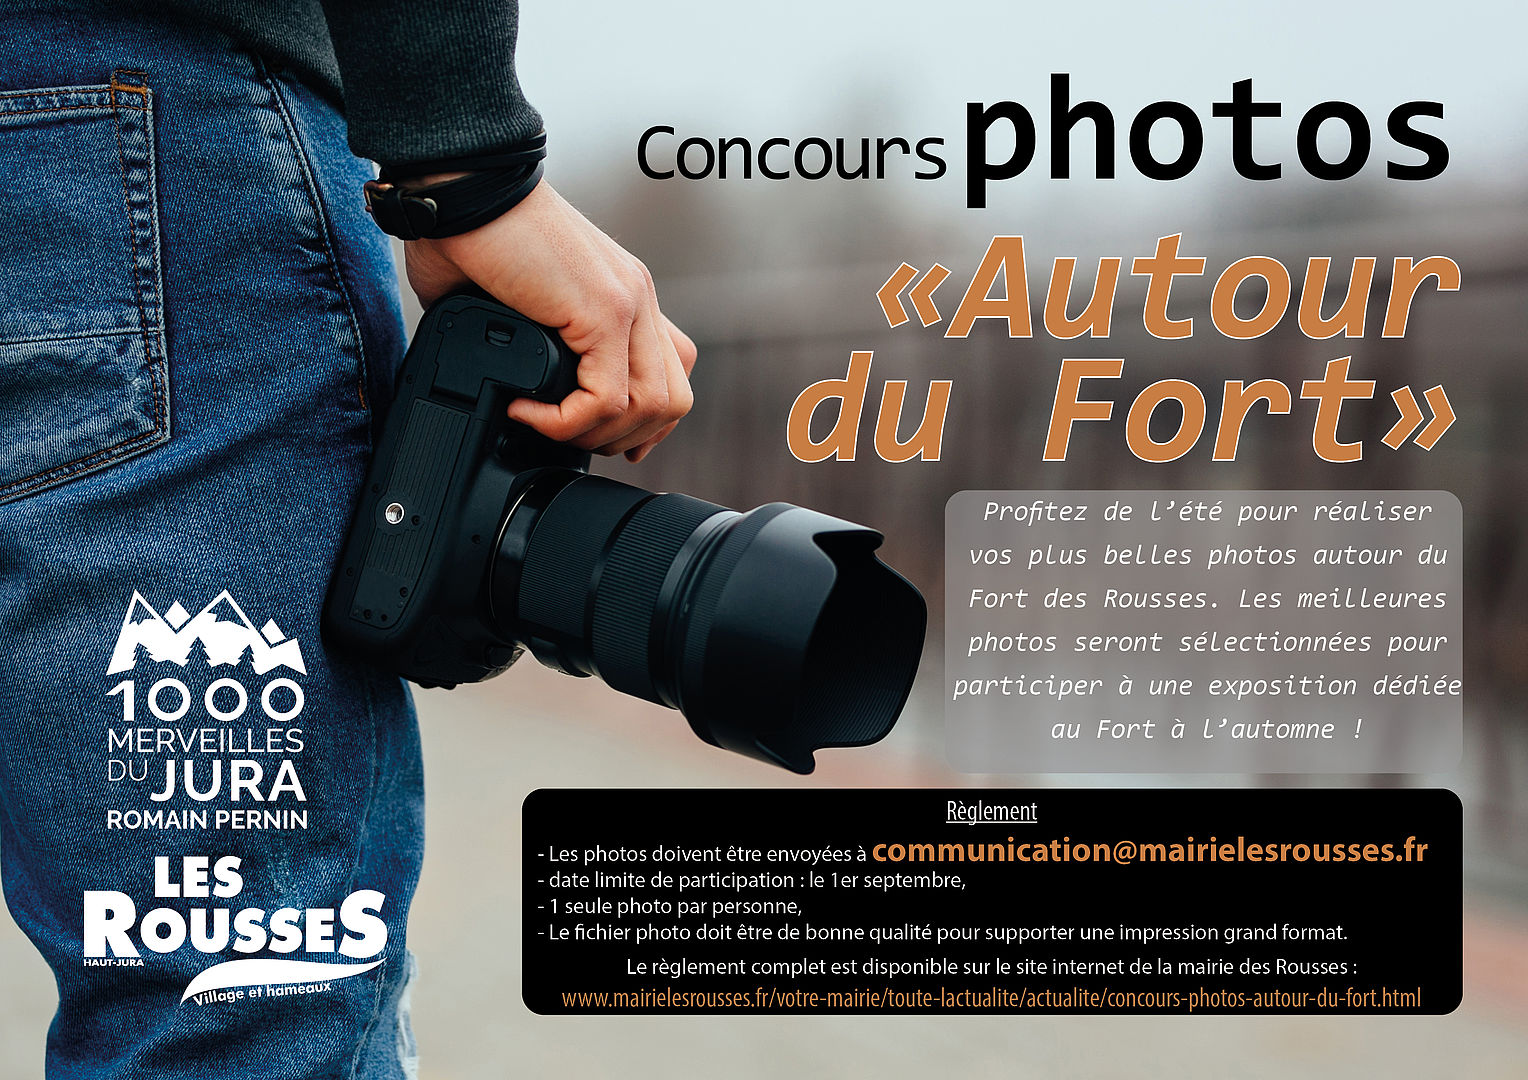 Concours photos "Autour du Fort"